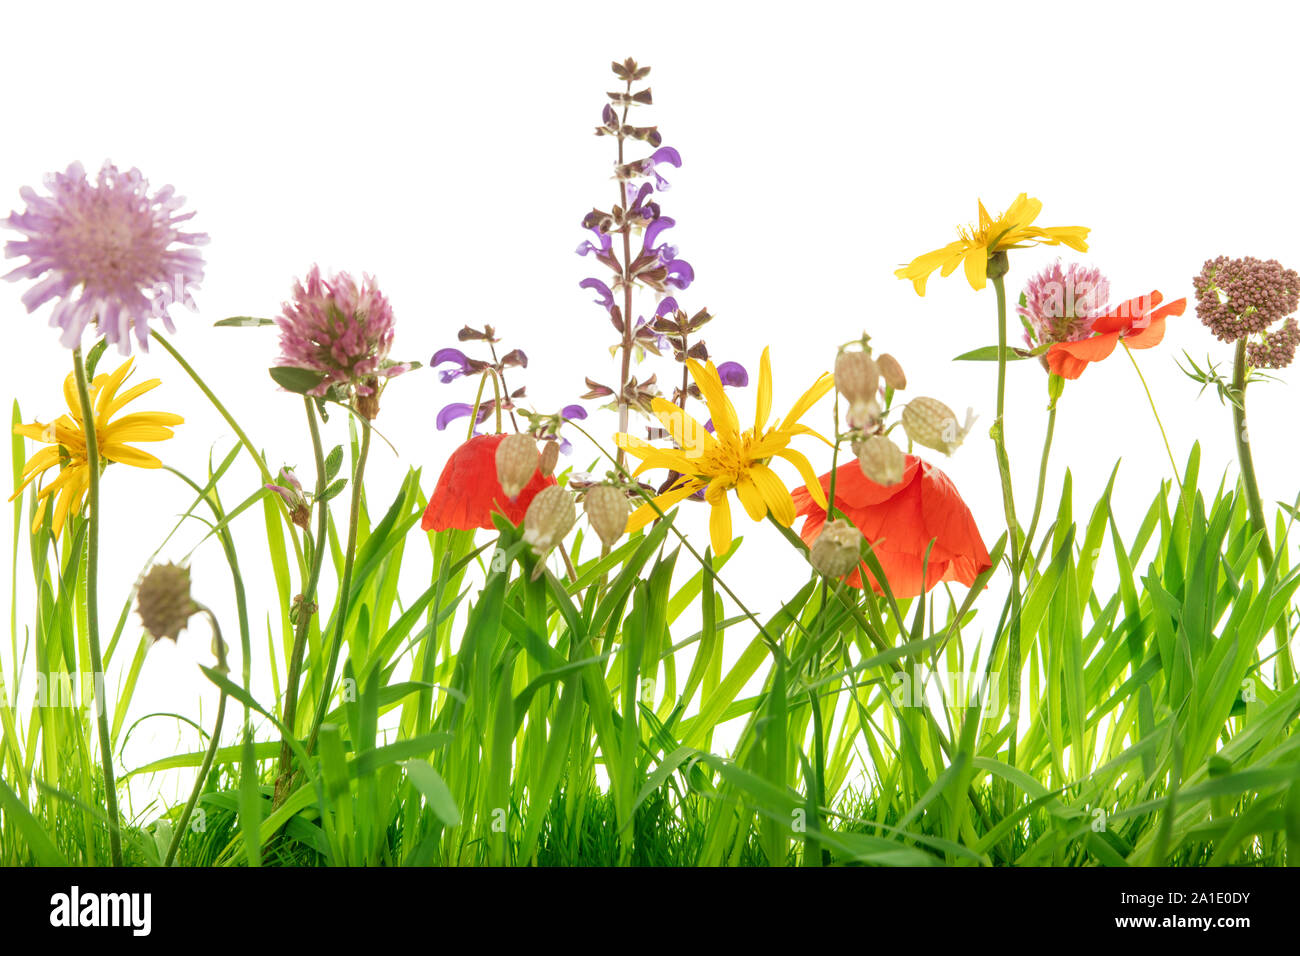 Primer plano de un prado de flores silvestres, fondo blanco, flores y capullos Foto de stock